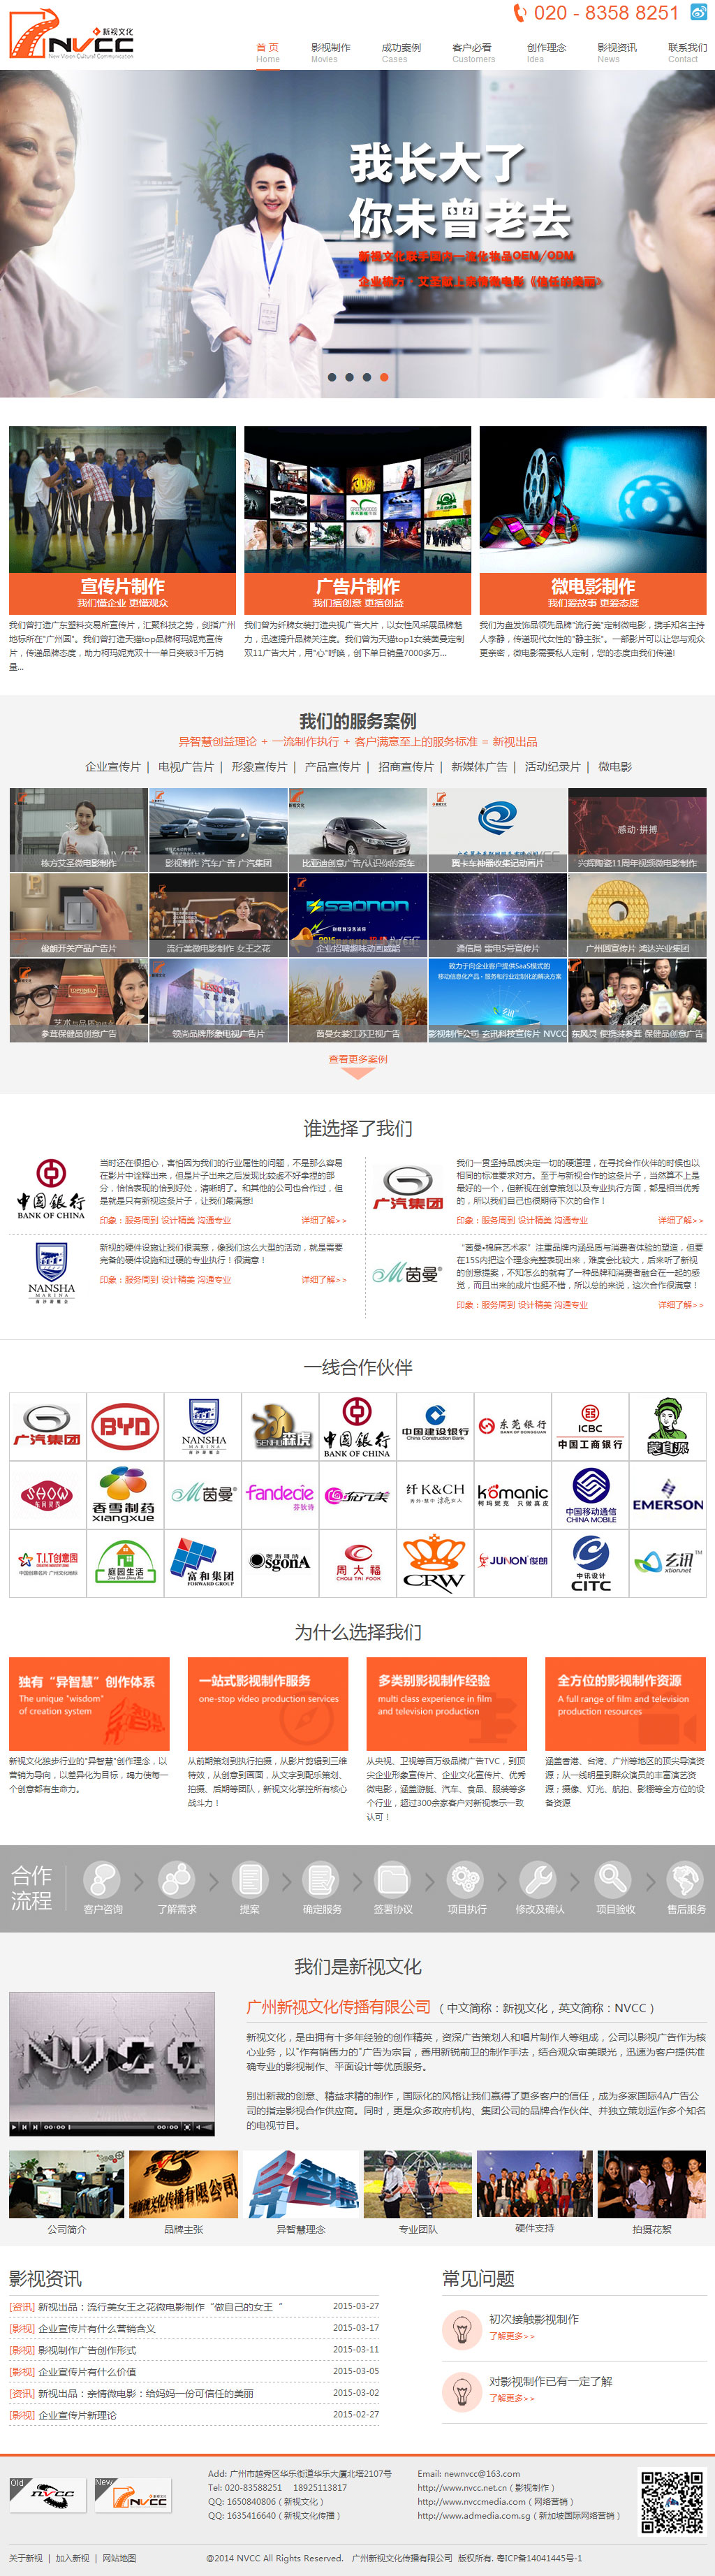 新视文化传播,怒熊网,影视网站建设,重庆网站建设公司